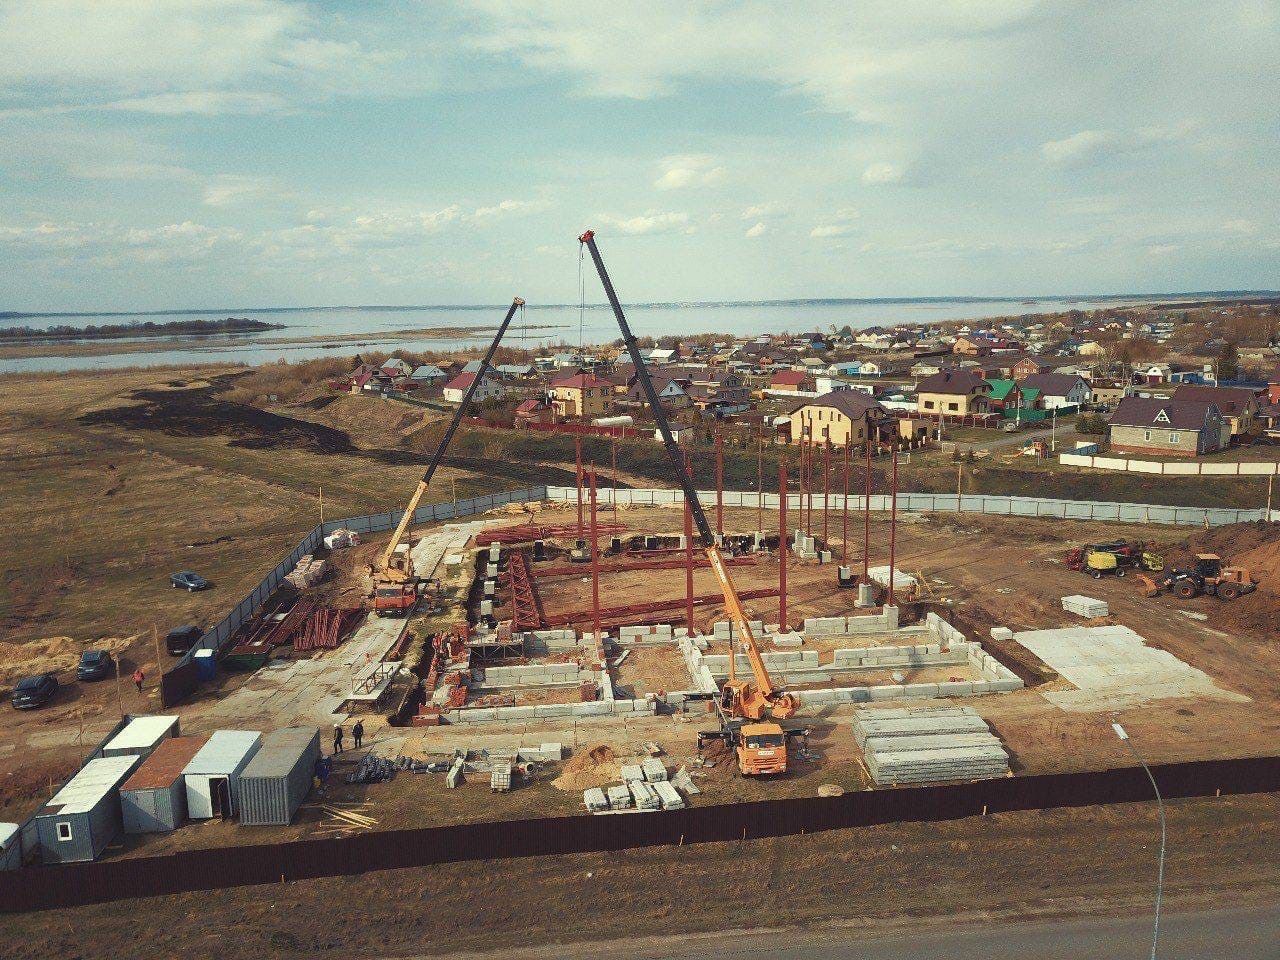 В Алексеевском полным ходом ведётся строительство Центра бадминтона на 6 кортов